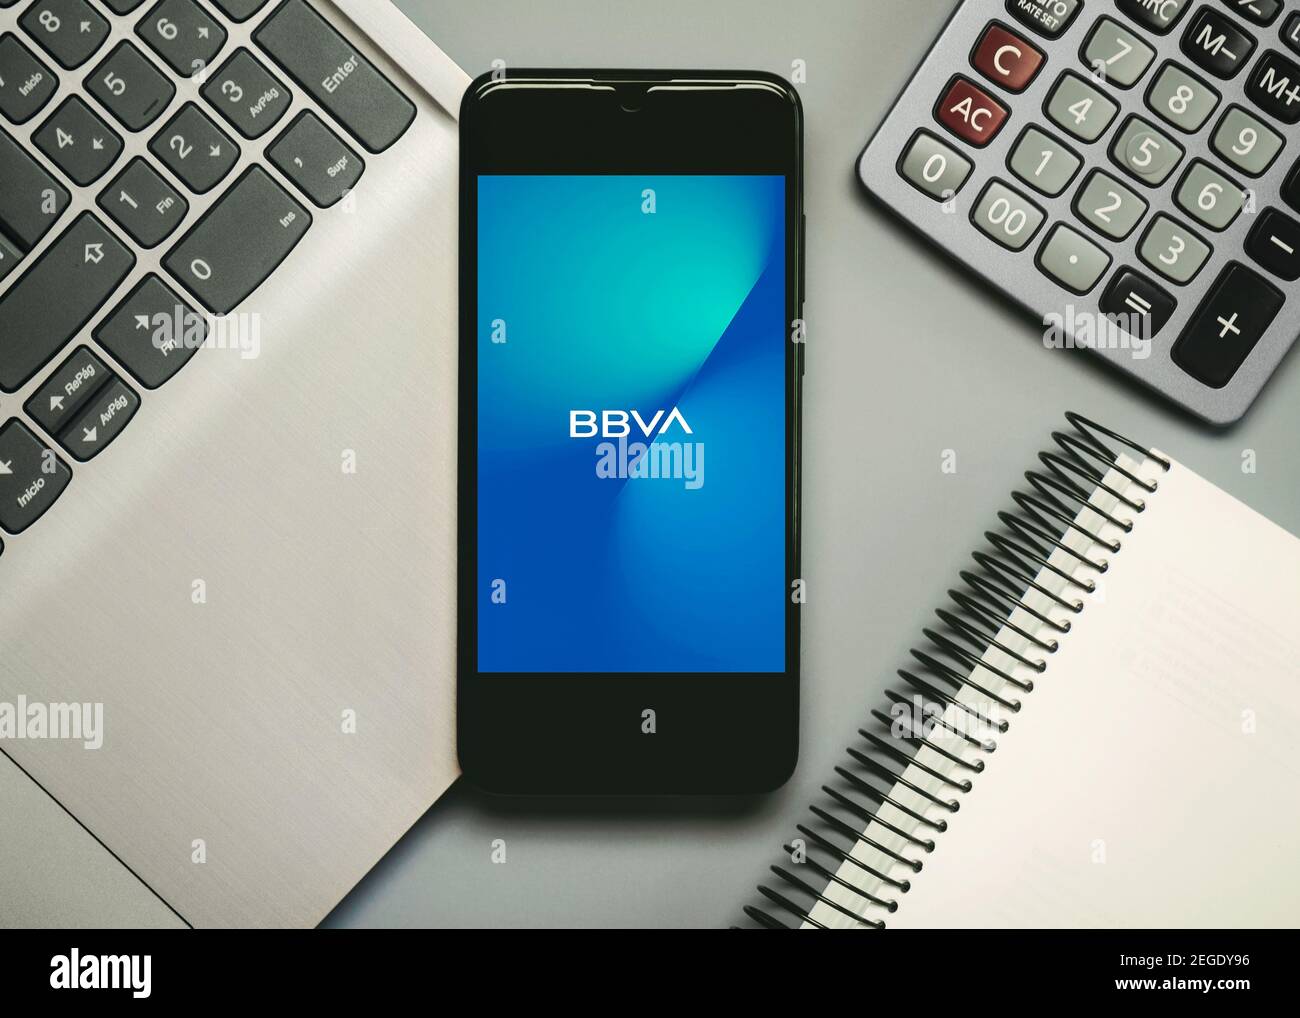 Logo de l'application mobile BBVA sur l'écran du smartphone, à côté d'un ordinateur portable, d'un ordinateur portable et d'une calculatrice, sur fond gris Banque D'Images